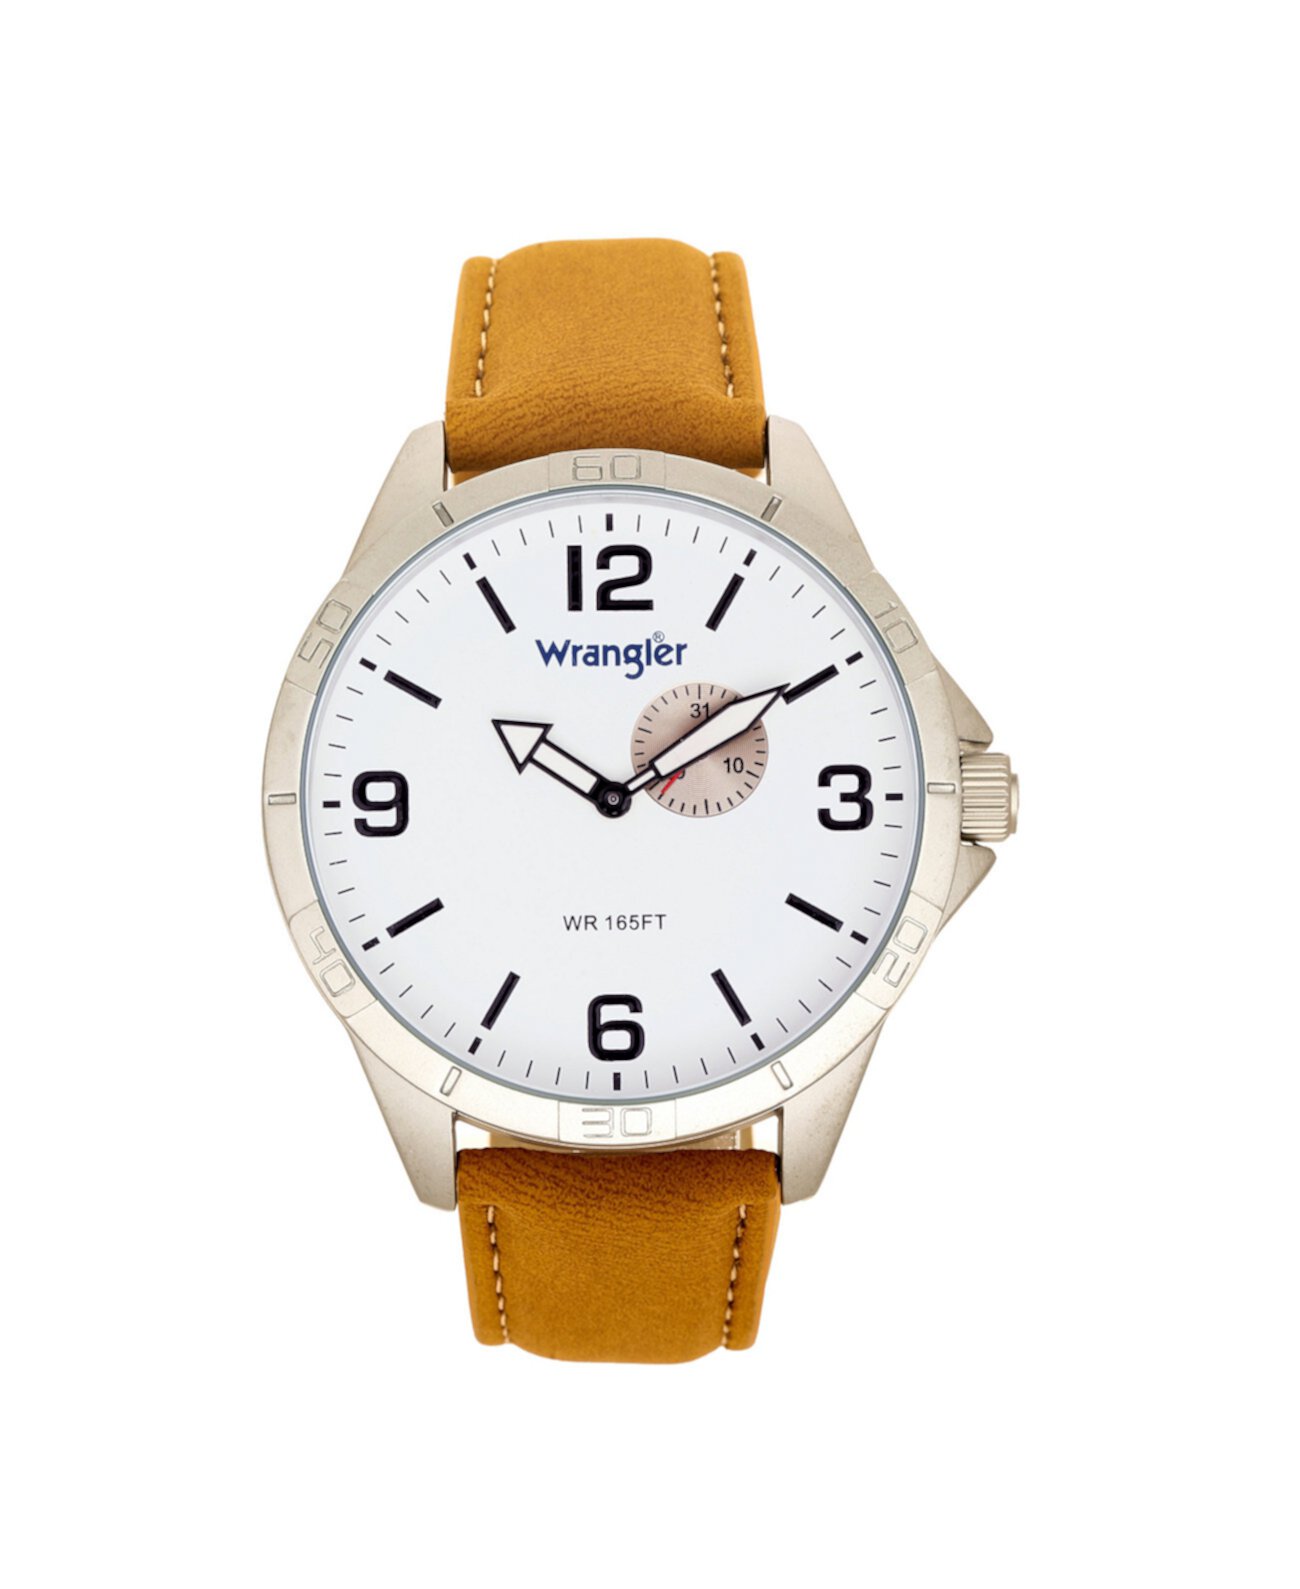 Мужские часы, корпус 48 мм с IP-защитой, белый циферблат, дополнительный циферблат, коричневый ремешок Wrangler